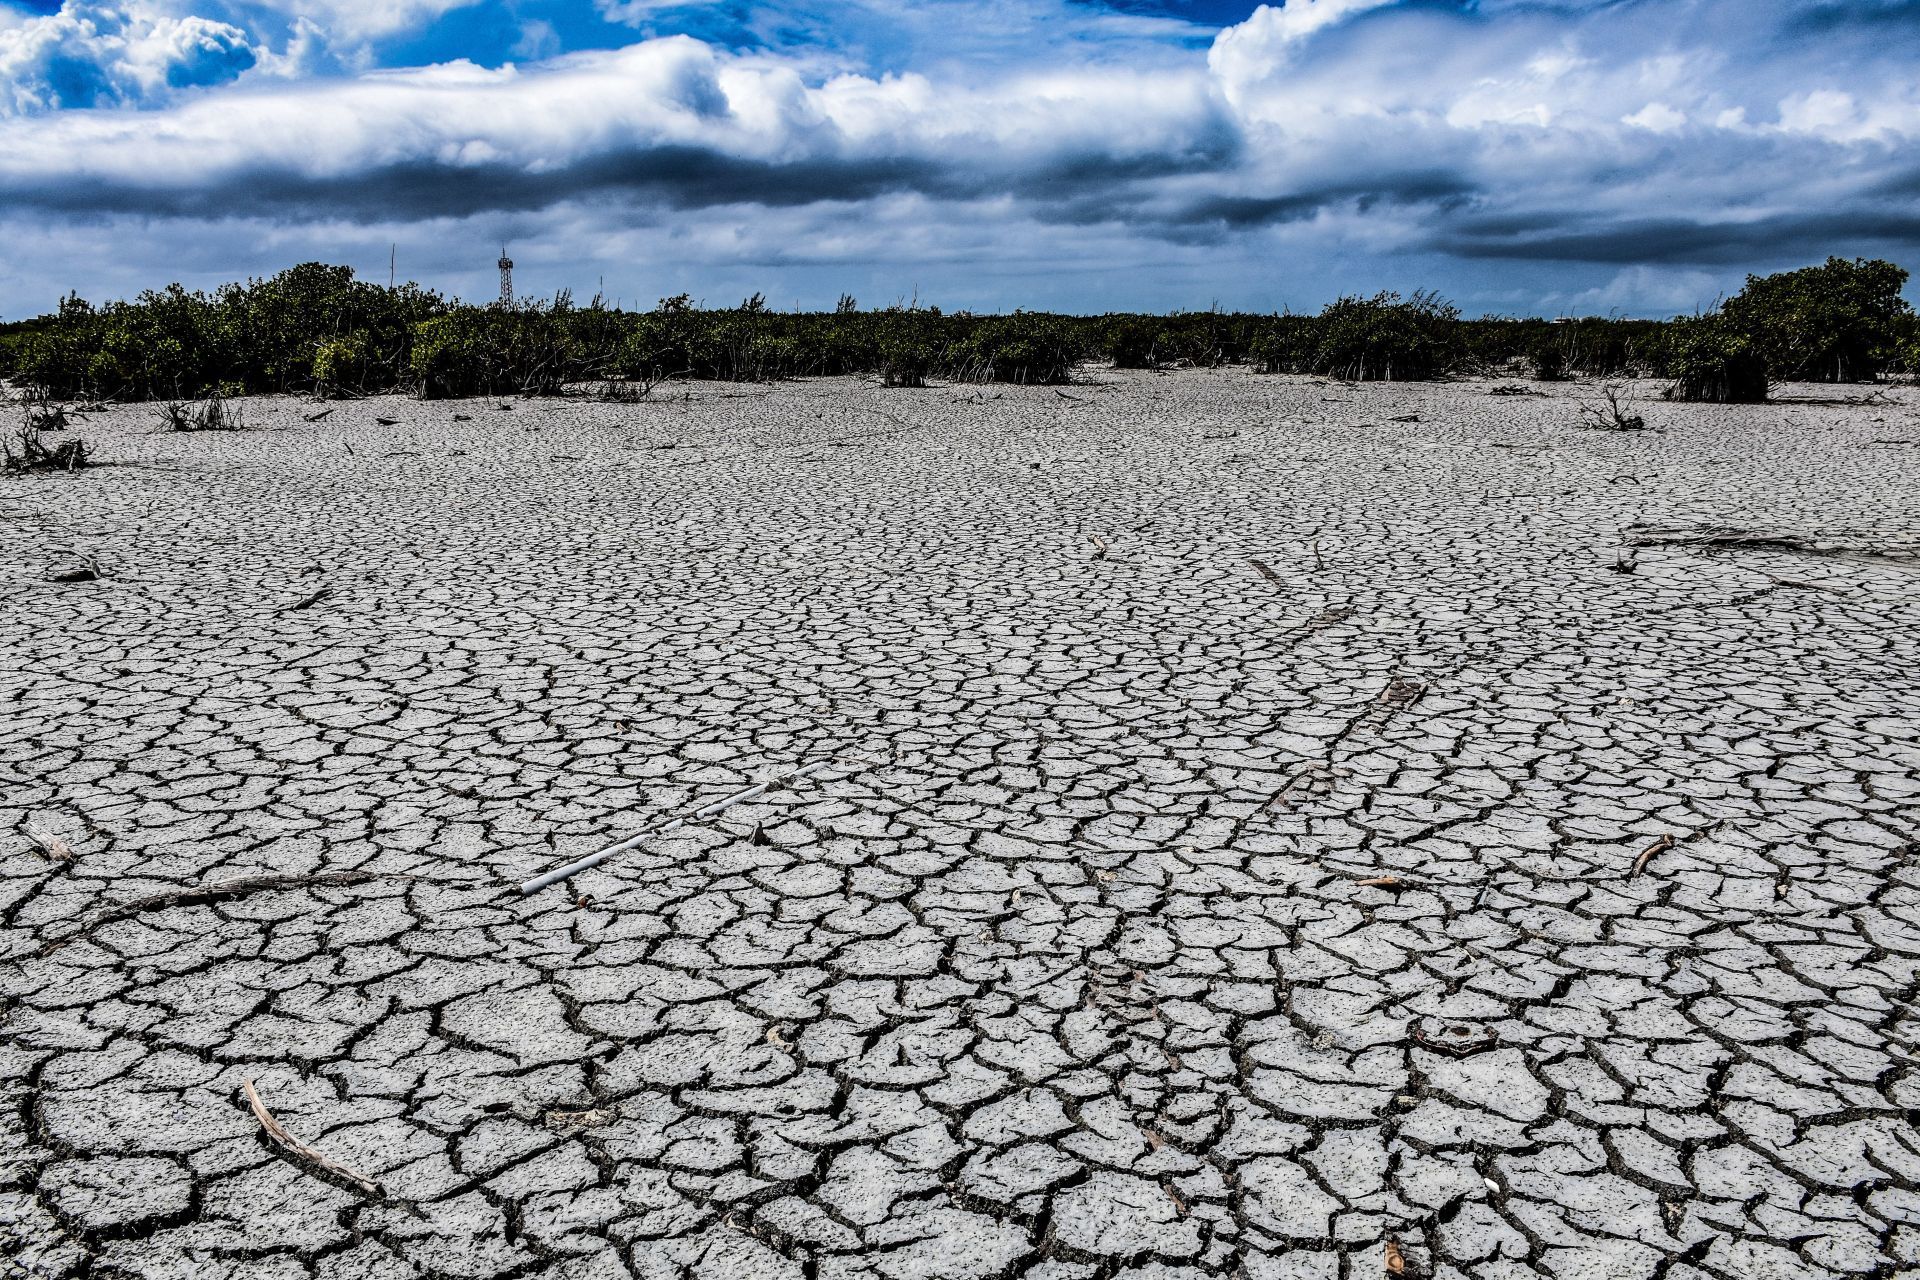 MÉXICO, 13ABRIL2021.- La Comisión Nacional del Agua y el Servicio Meteorológico Nacional (SMN) informaron que el 83.92 por ciento del territorio nacional enfrenta alguna situación de sequía. Una condición crítica de la que no se tenía registro en el país desde 2012, considerado el año de la peor sequía en décadas
FOTO: ARCHIVO /CUARTOSCURO